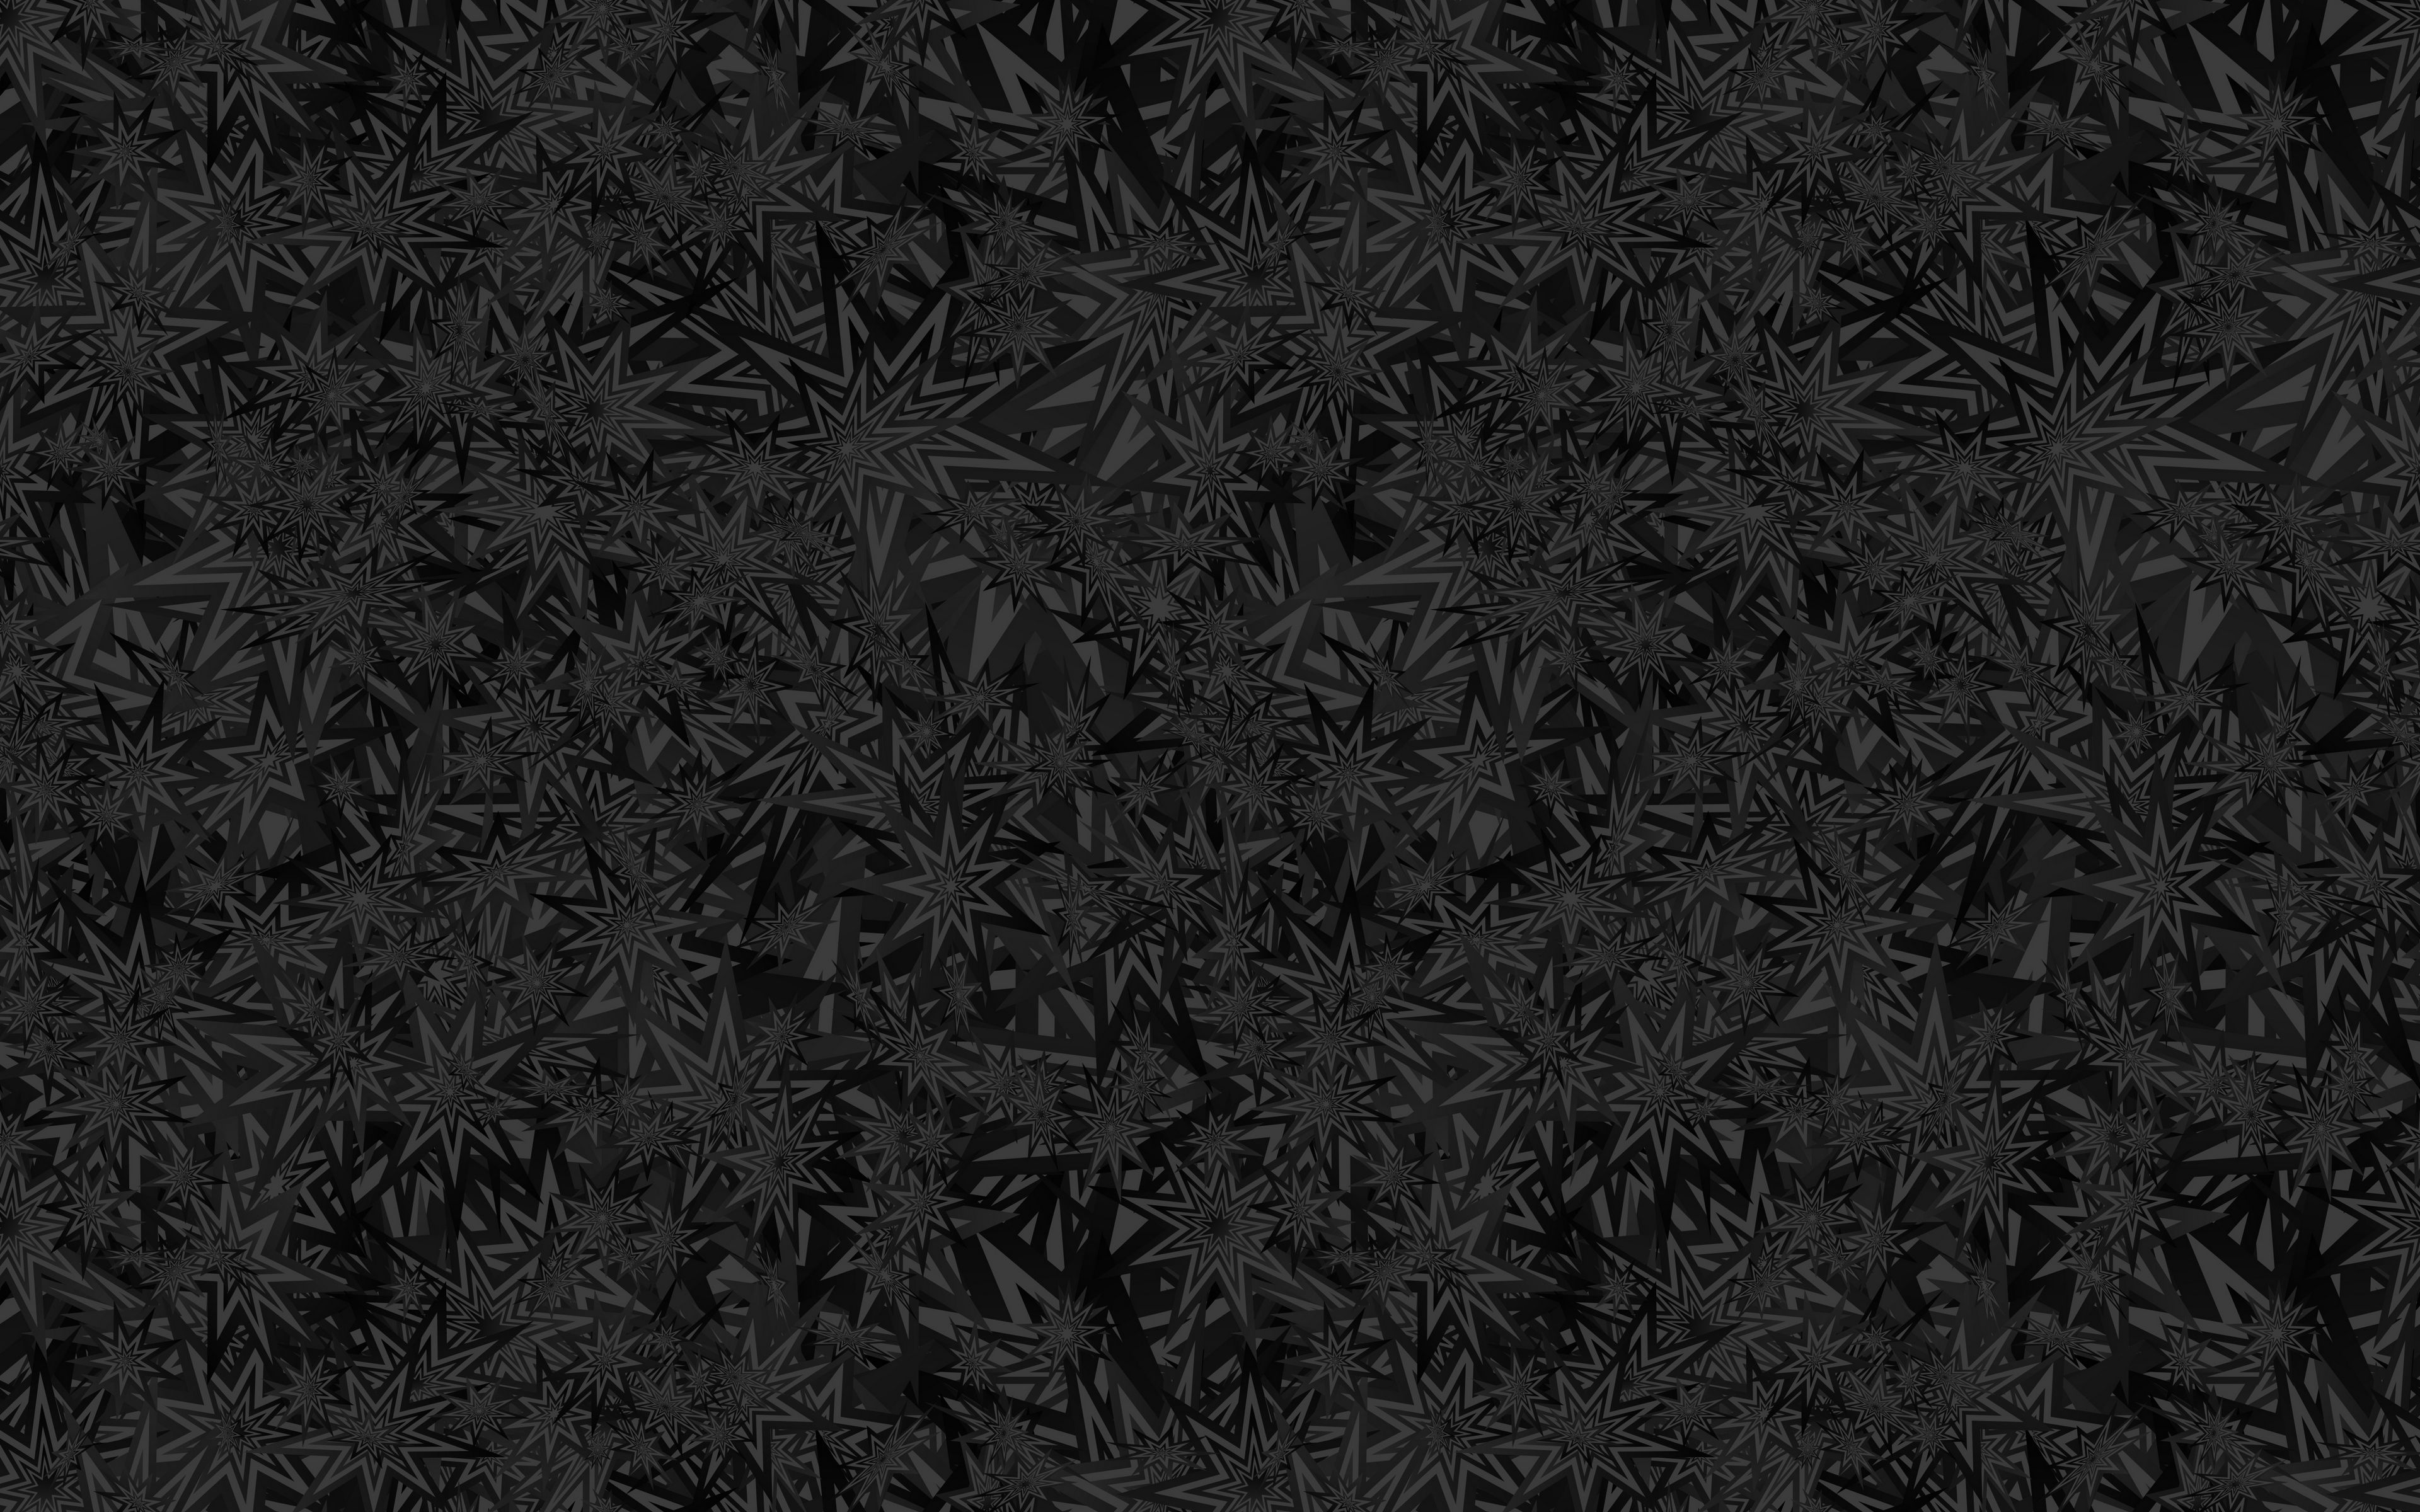 Download wallpaper 3840x2400 stars, patterns, black, texture, ornament 4k  ultra hd 16:10 hd background